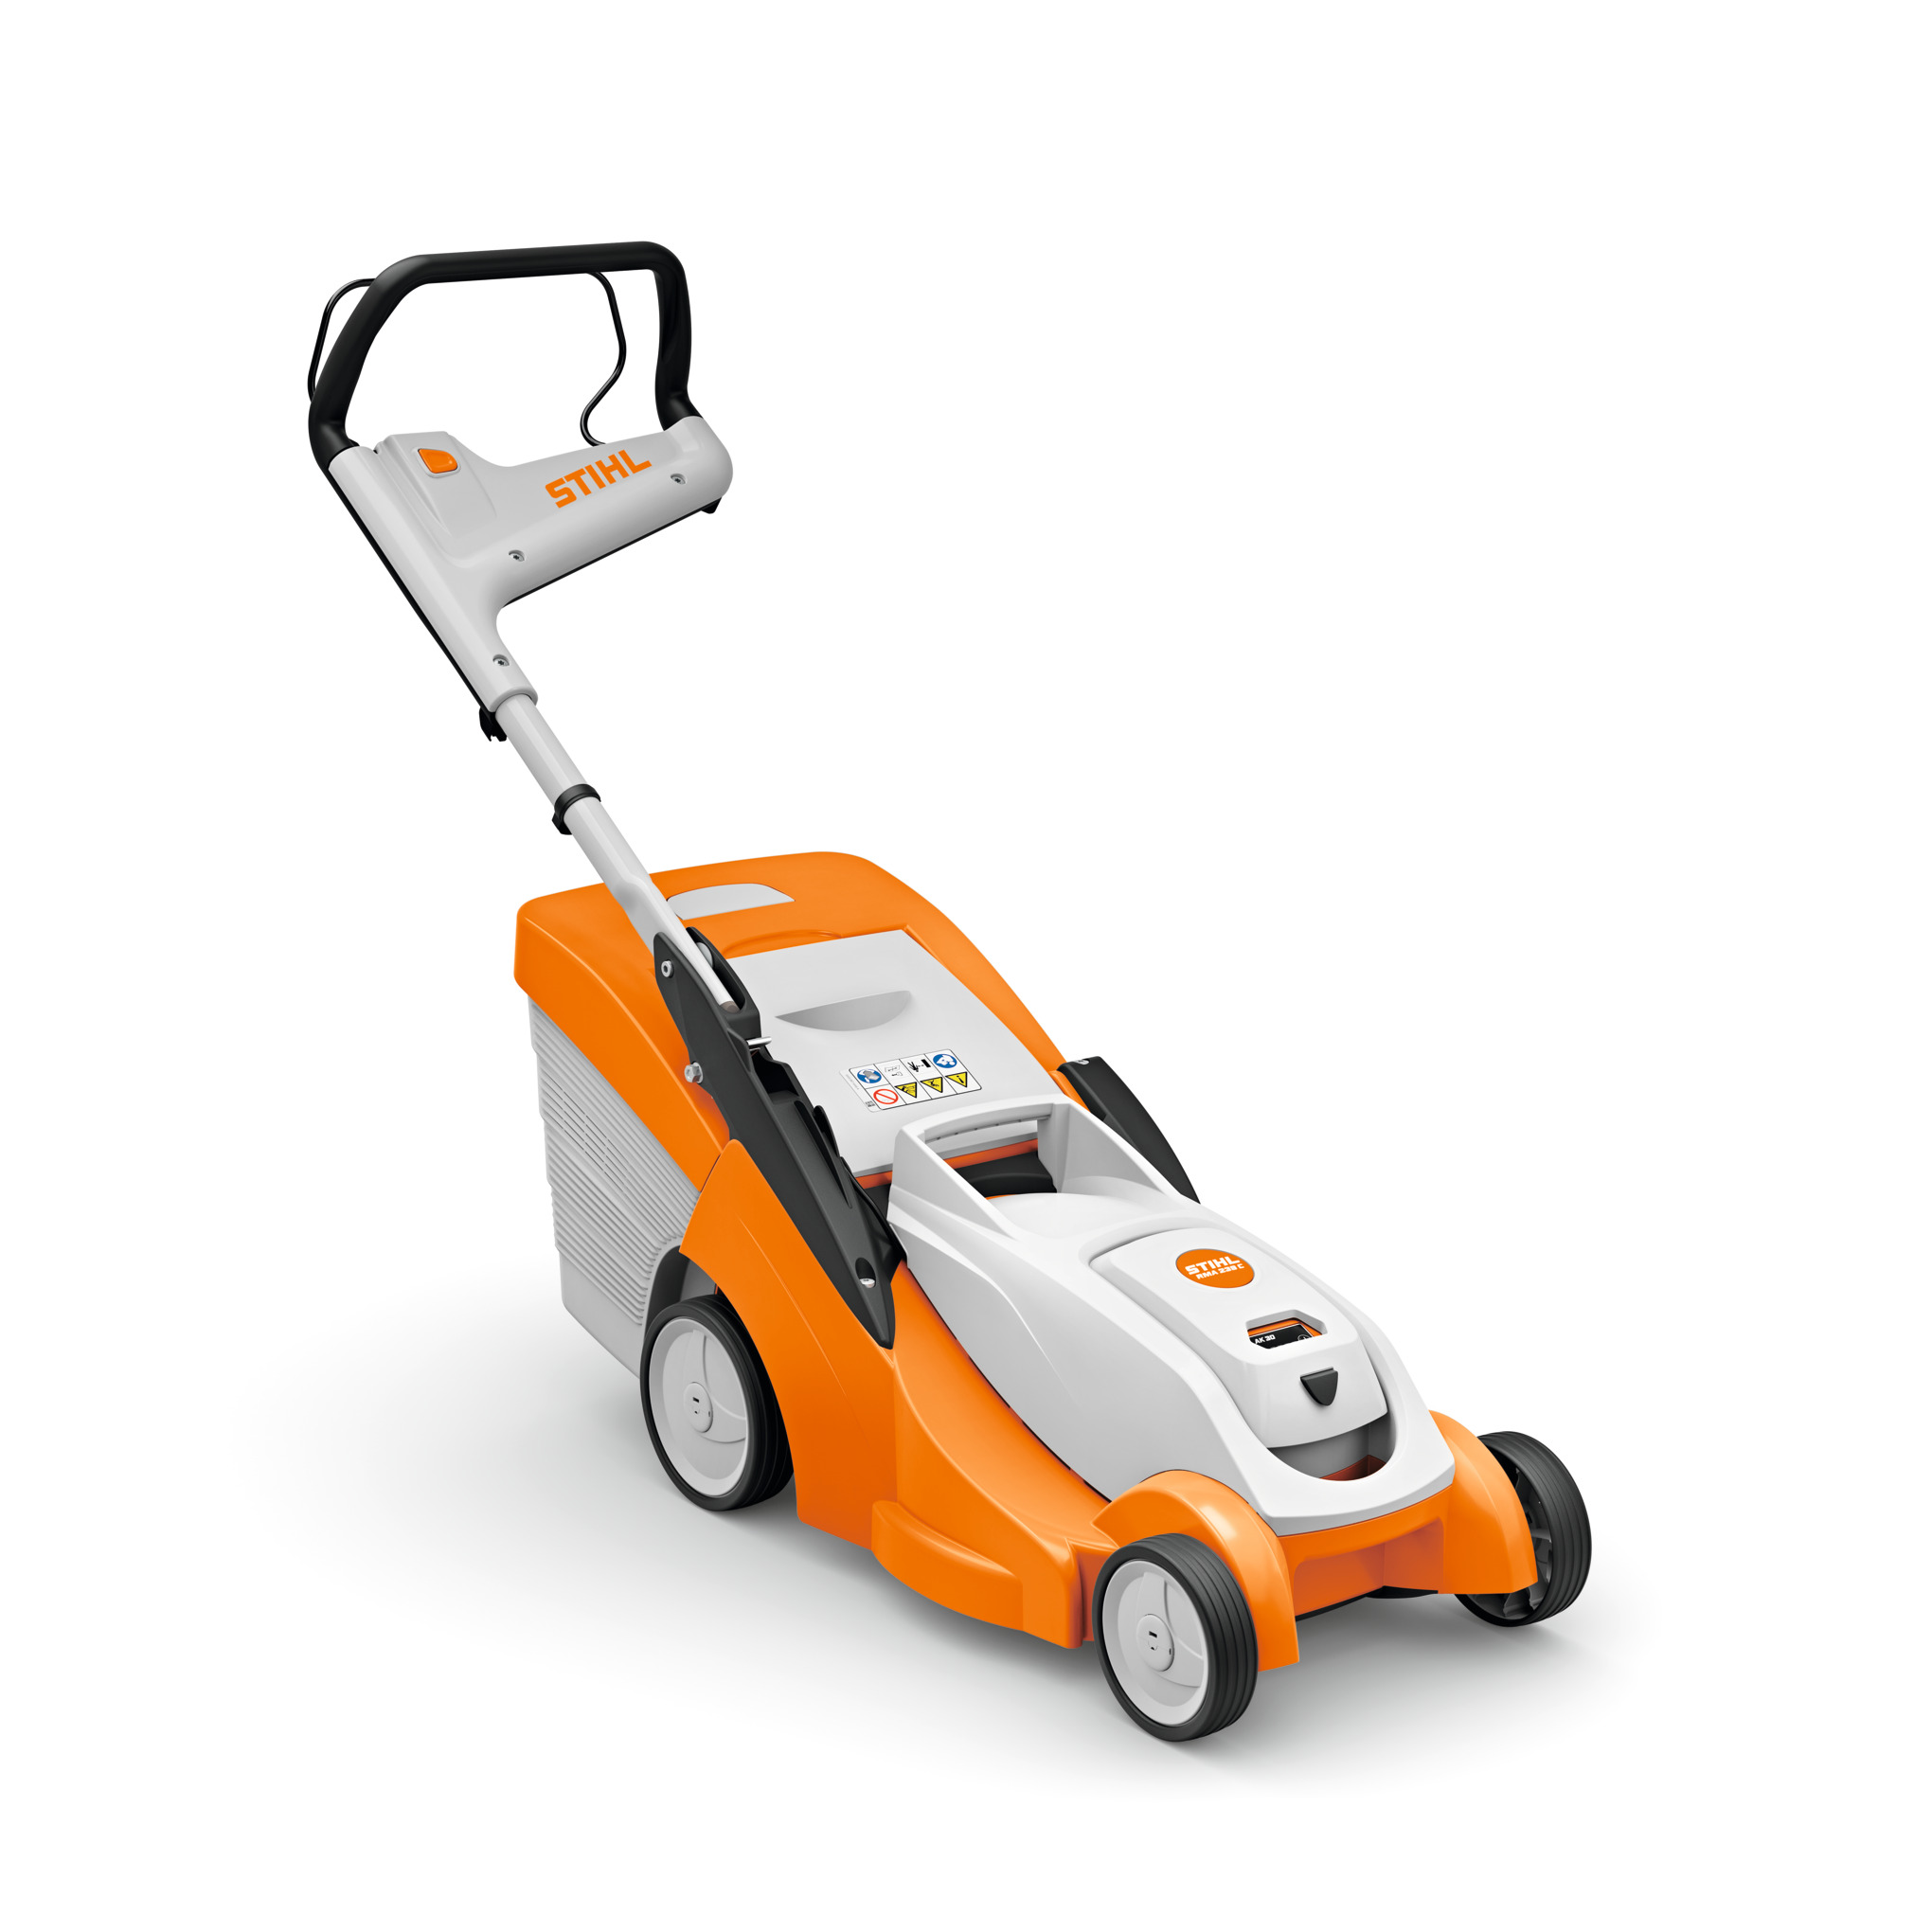 RMA 239 Cordless Lawn Mower – AK System